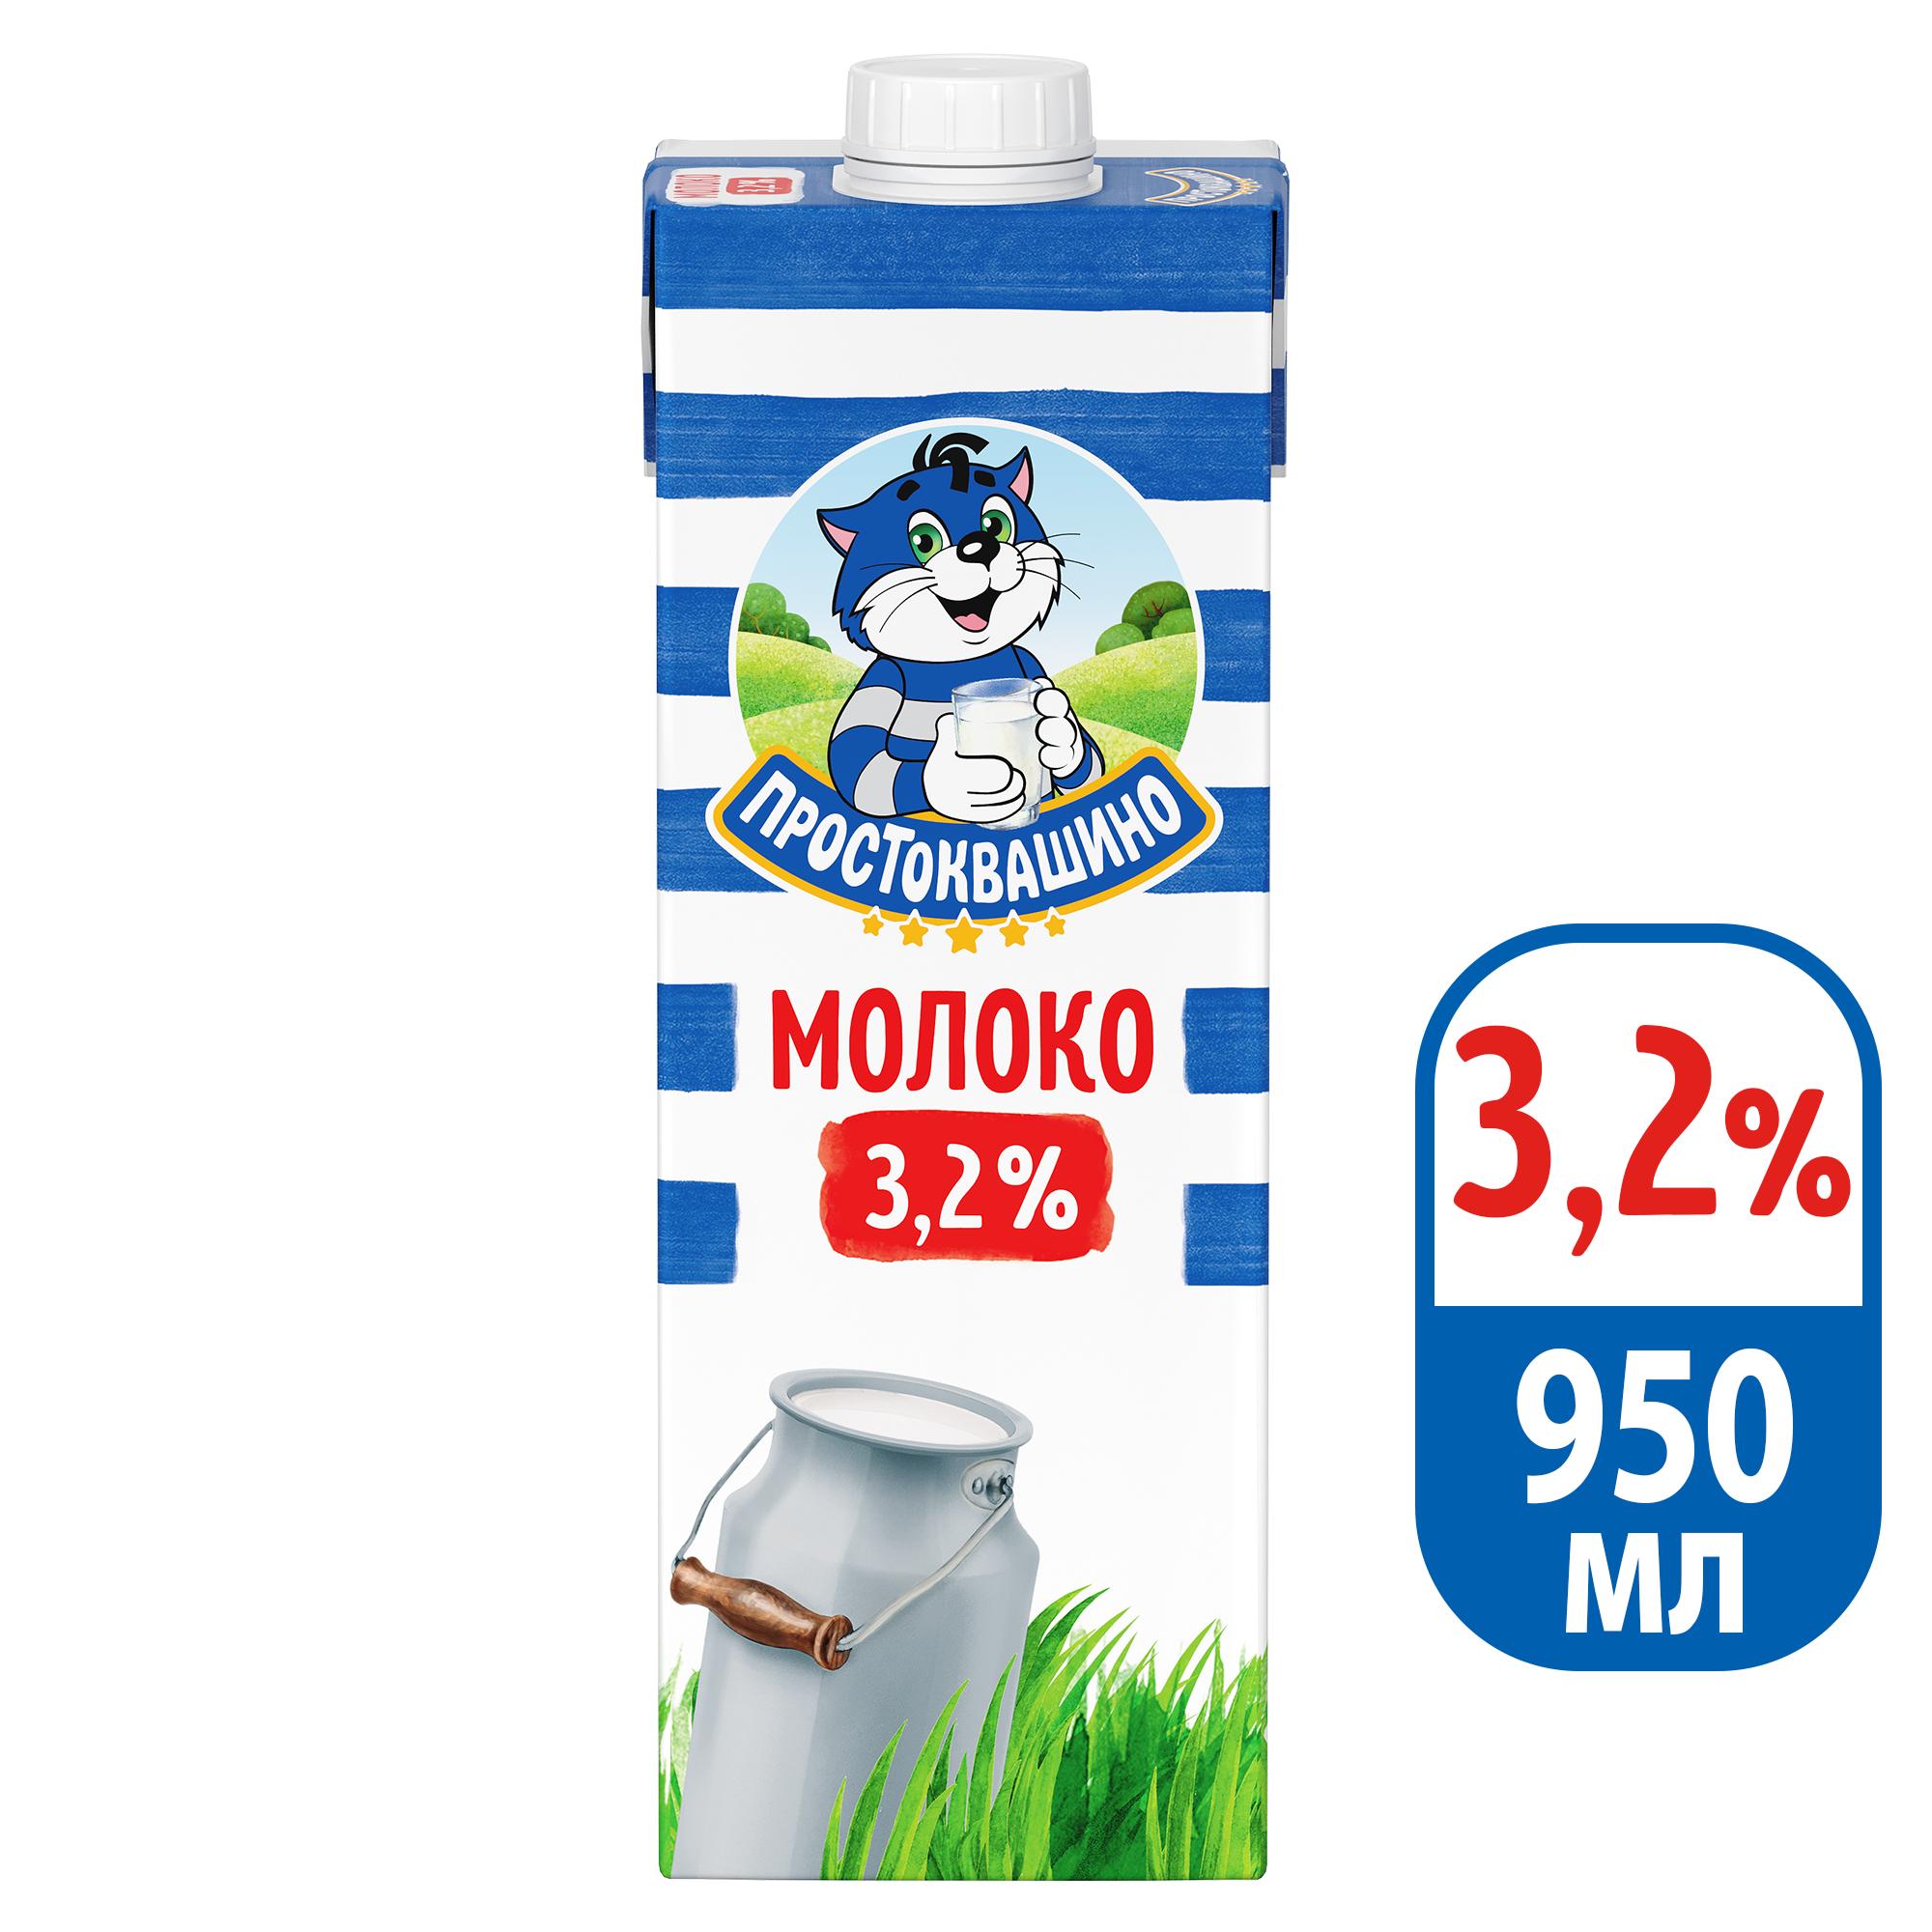 Молоко ультрапаст 3.2% Простоквашино шт 950мл - интернет-магазин Близнецы